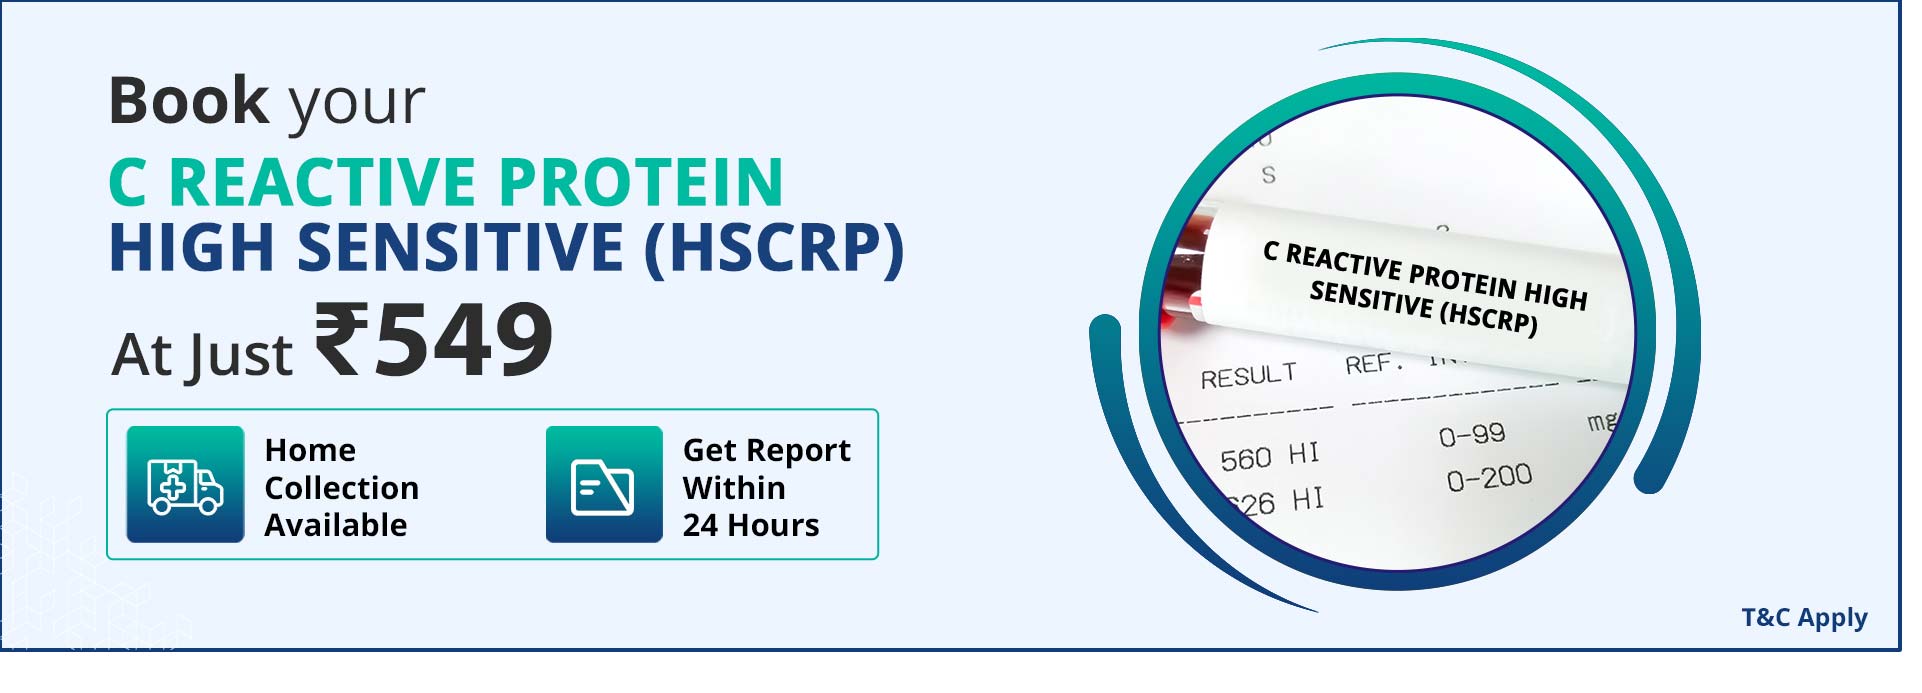 C Reactive Protein high Sensitive (hSCRP)